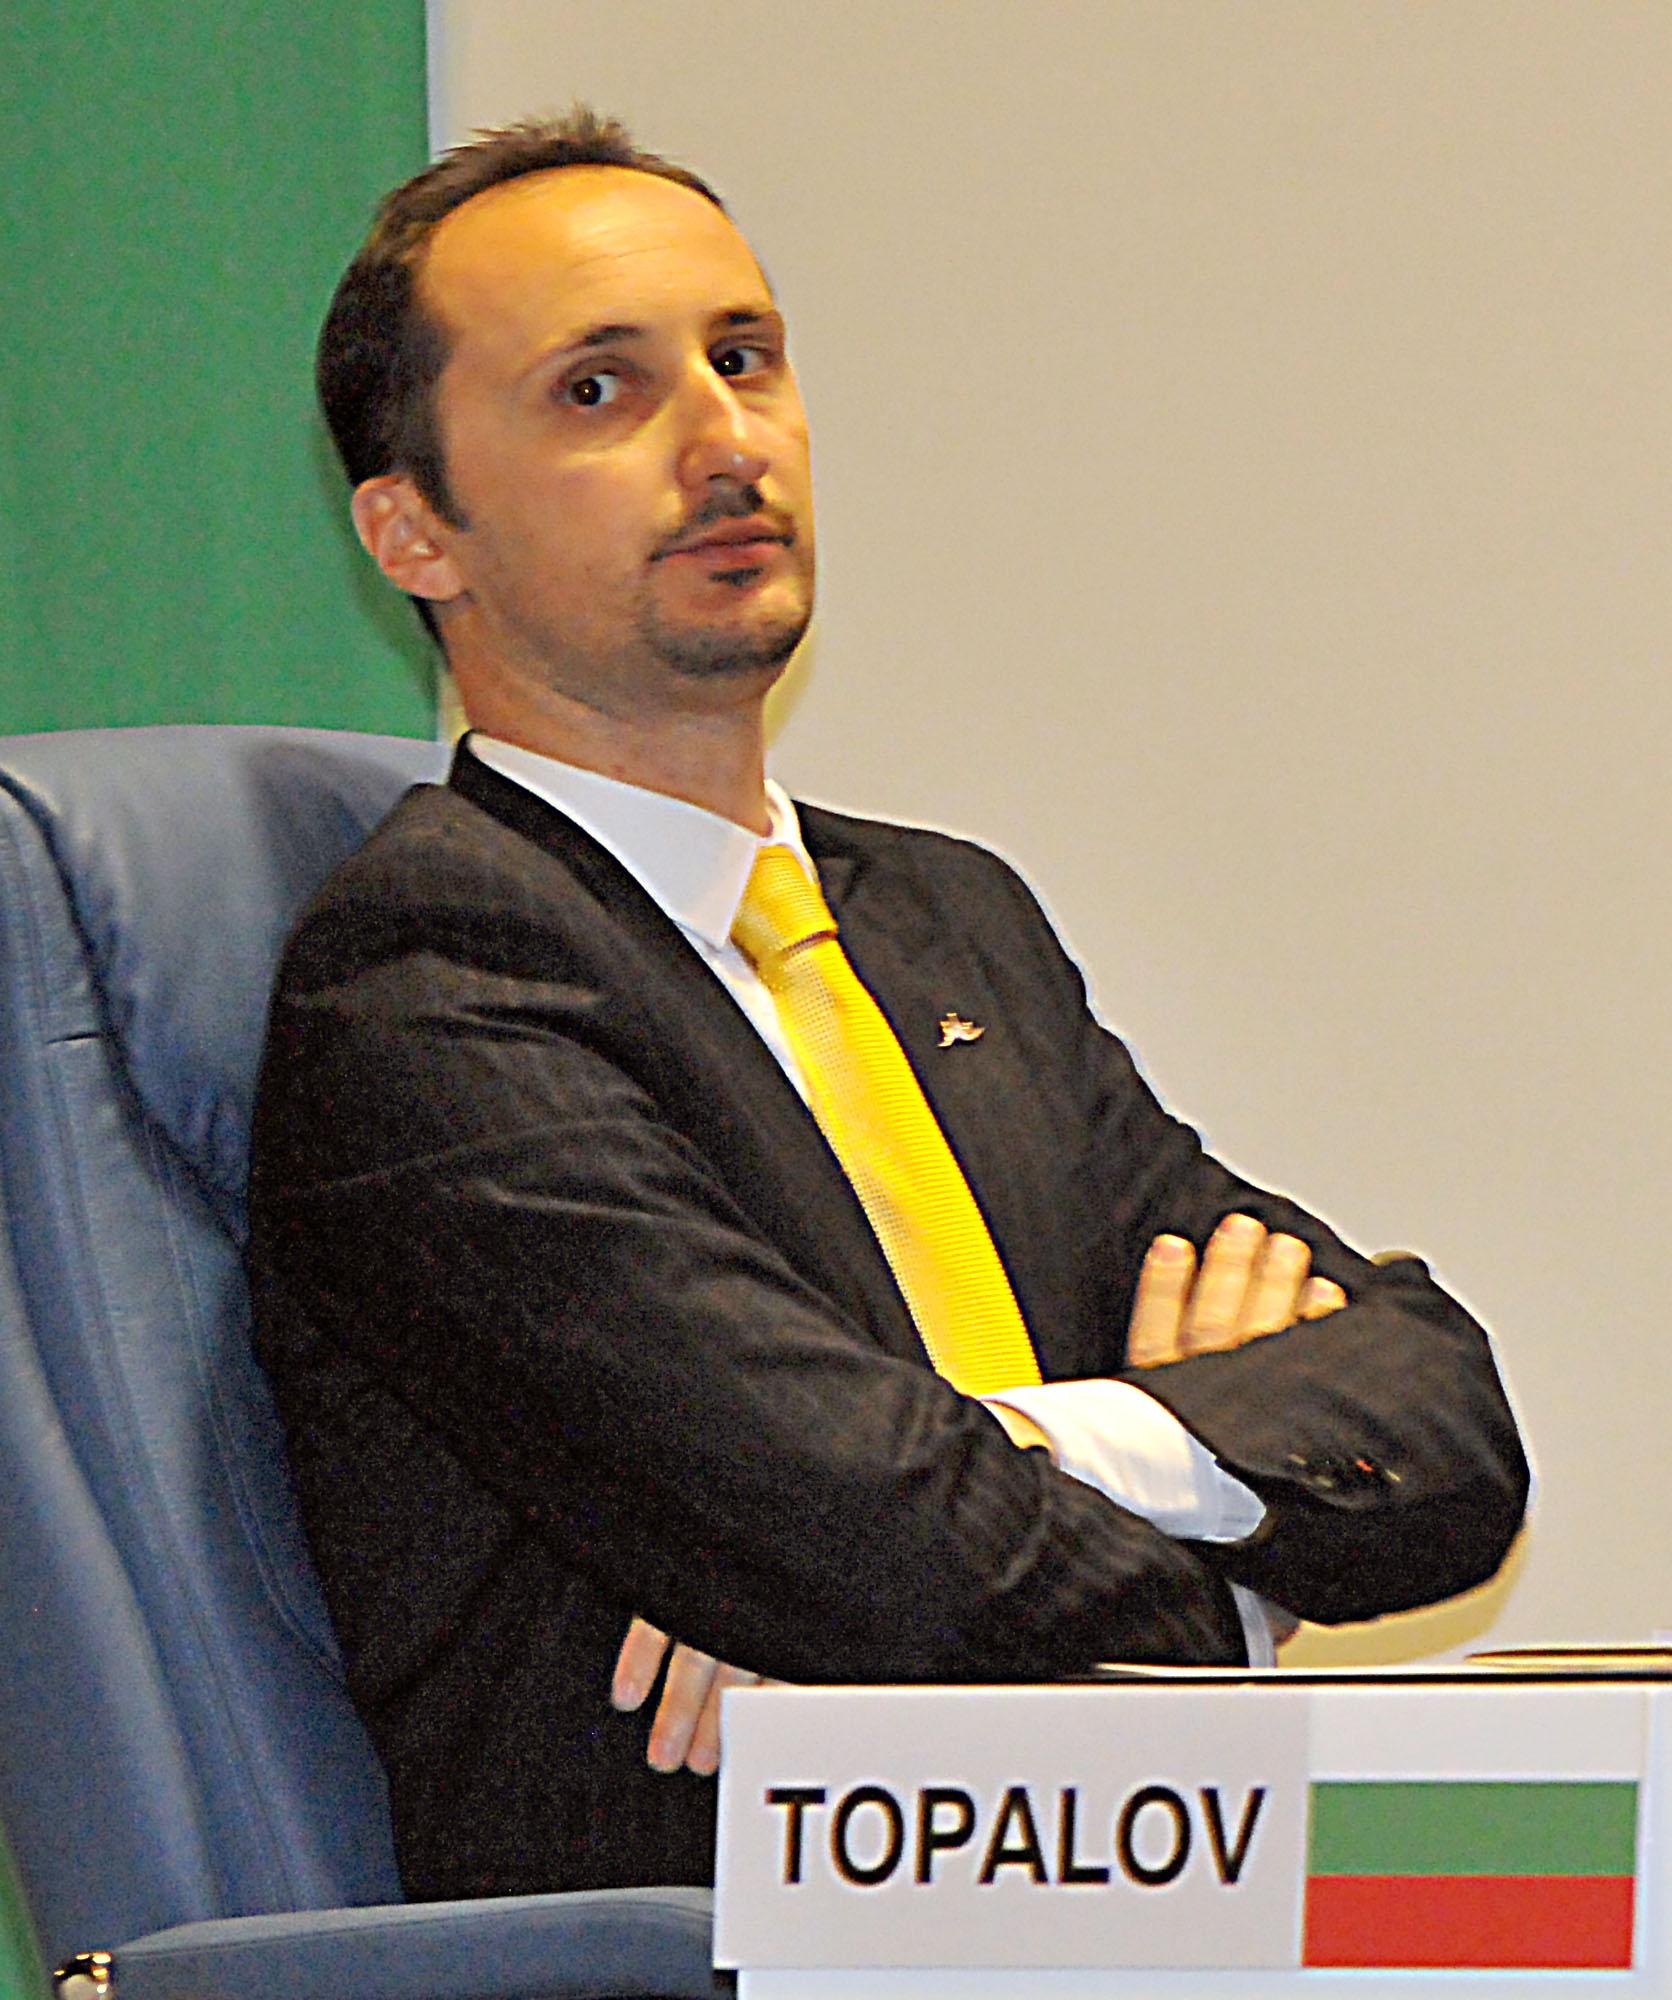 Веско Топалов води на турнир в Швейцария